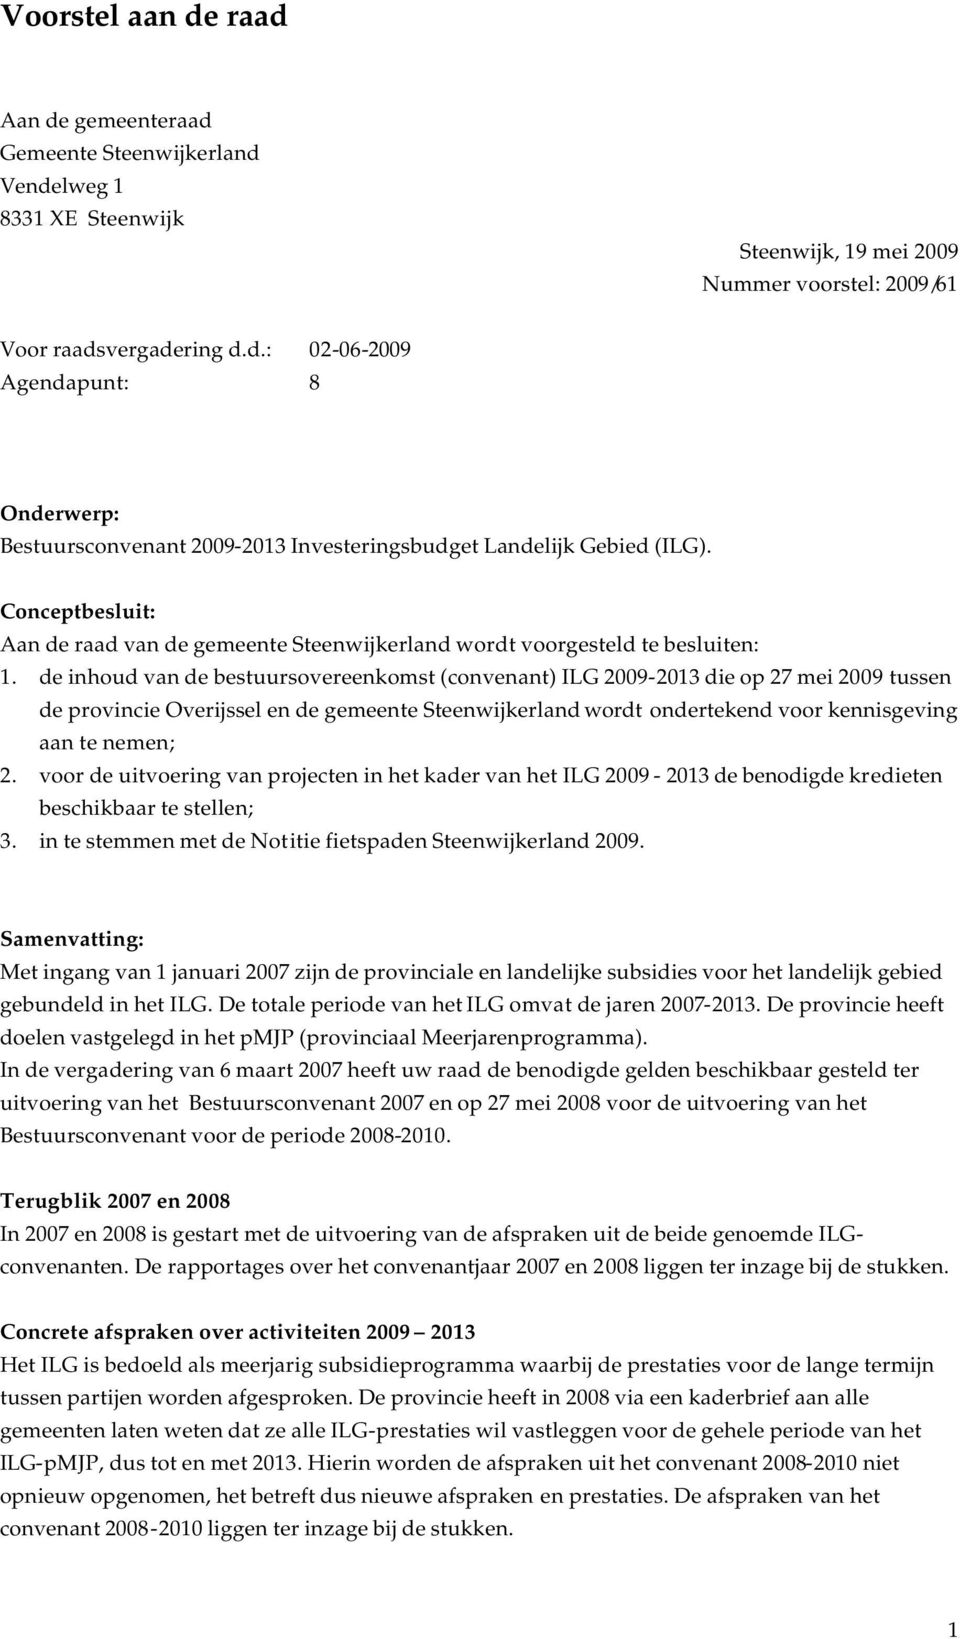 de inhoud van de bestuursovereenkomst (convenant) ILG 2009-2013 die op 27 mei 2009 tussen de provincie Overijssel en de gemeente Steenwijkerland wordt ondertekend voor kennisgeving aan te nemen; 2.